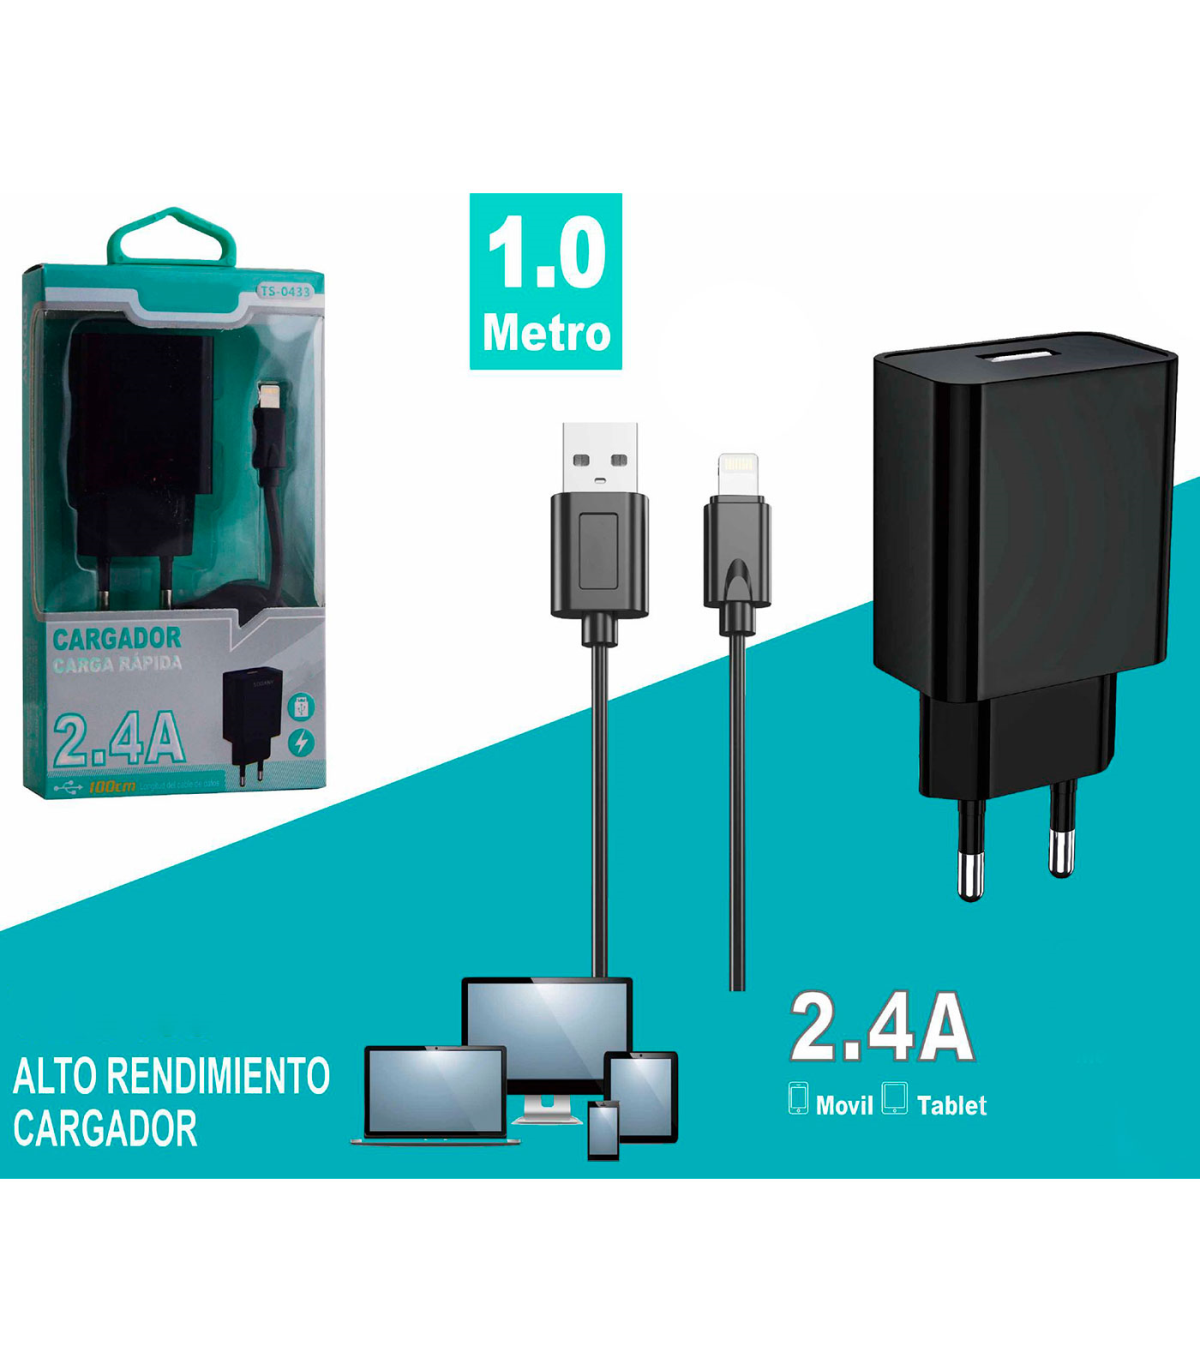 Tradineur - Cargador de móvil compatible con iOS, 2.4A, cable de 100 cm,  carga rápida, enchufe de corriente, smartphone, tablet